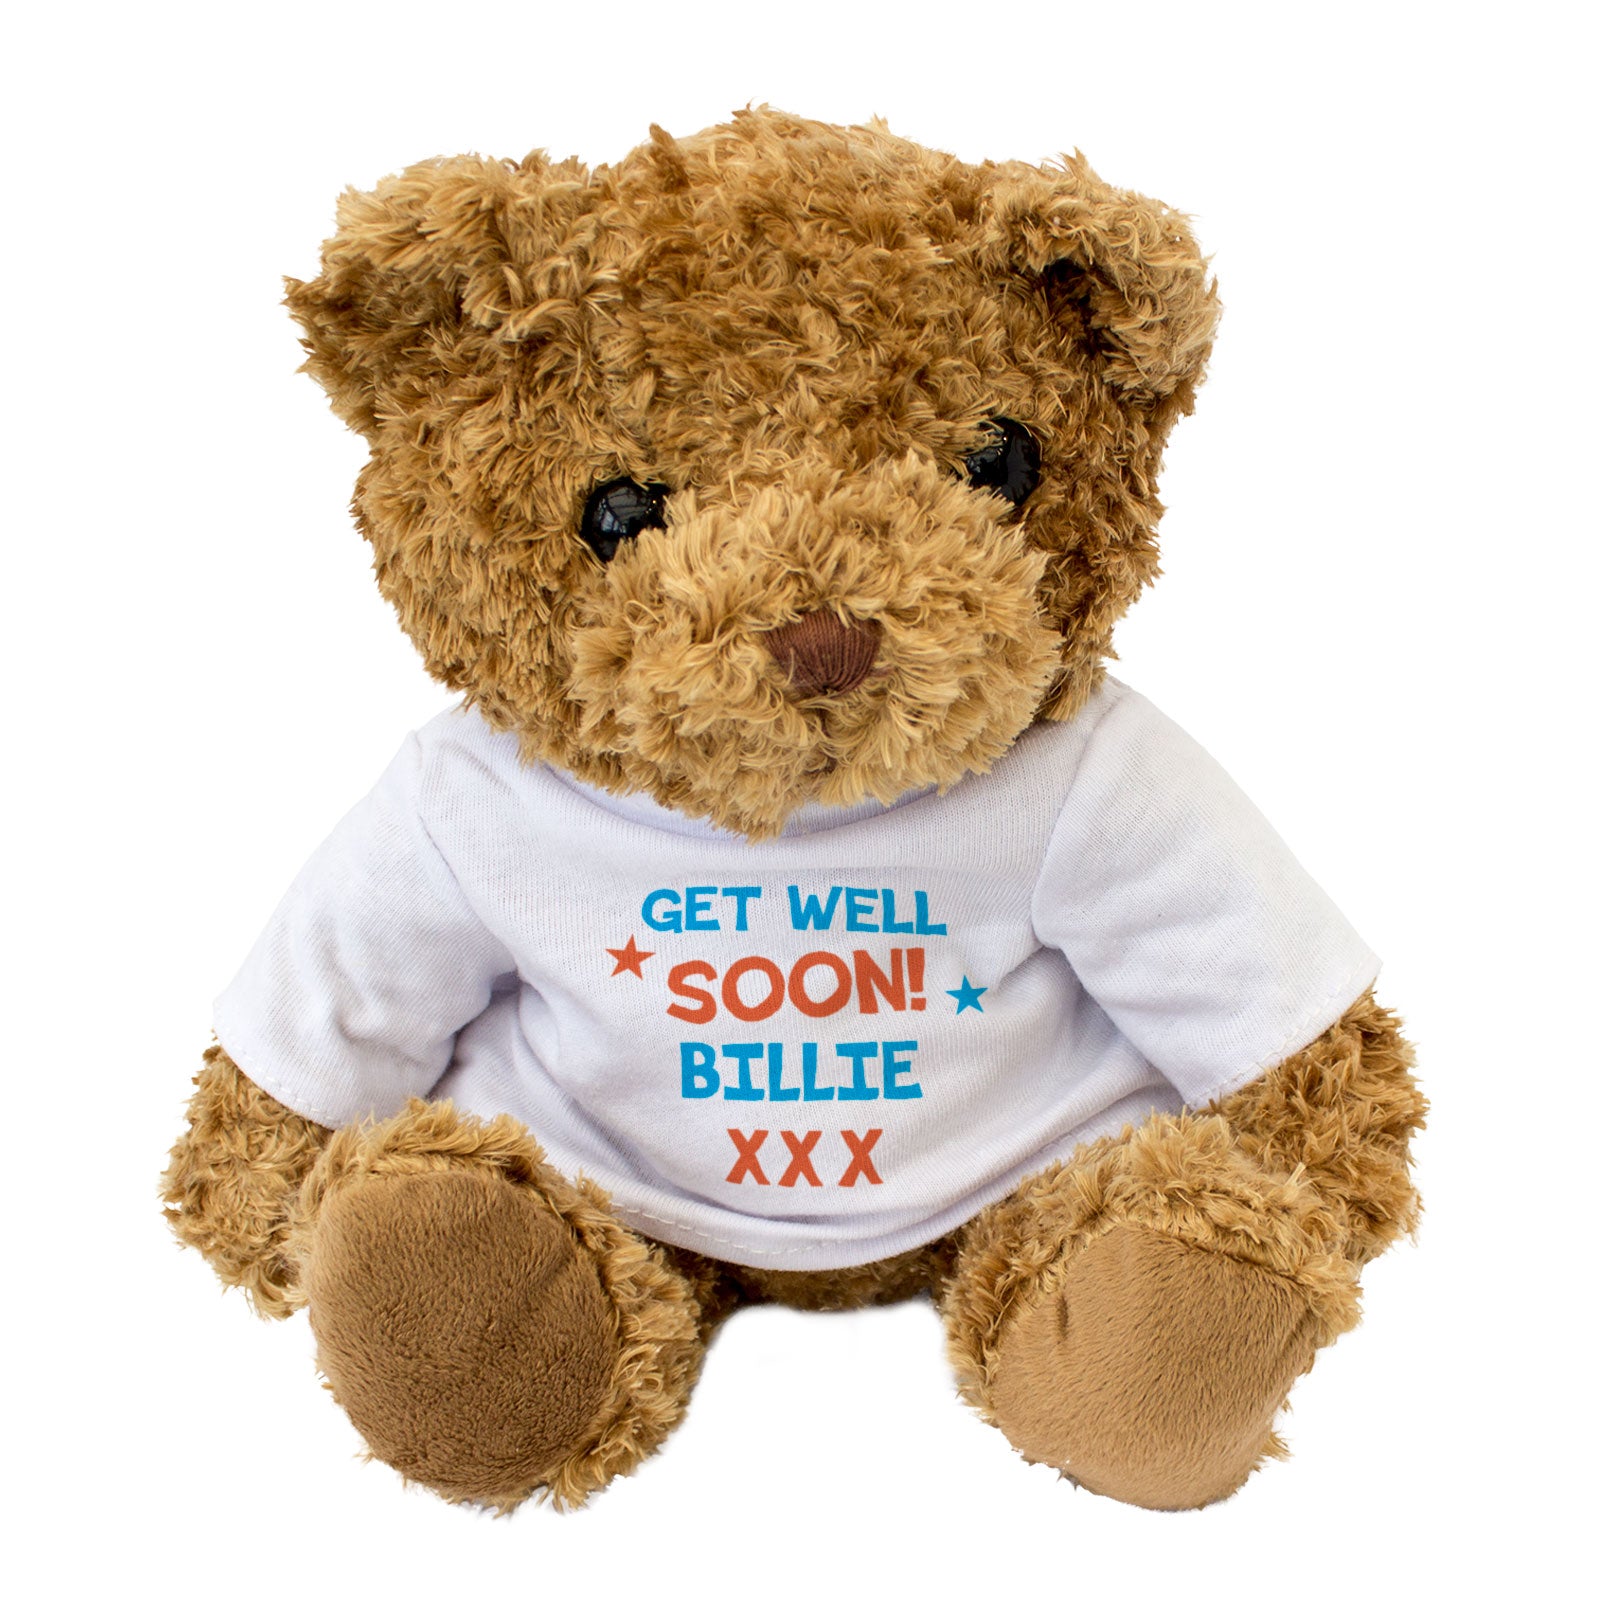 Get Well Soon Billie - Teddy Bear